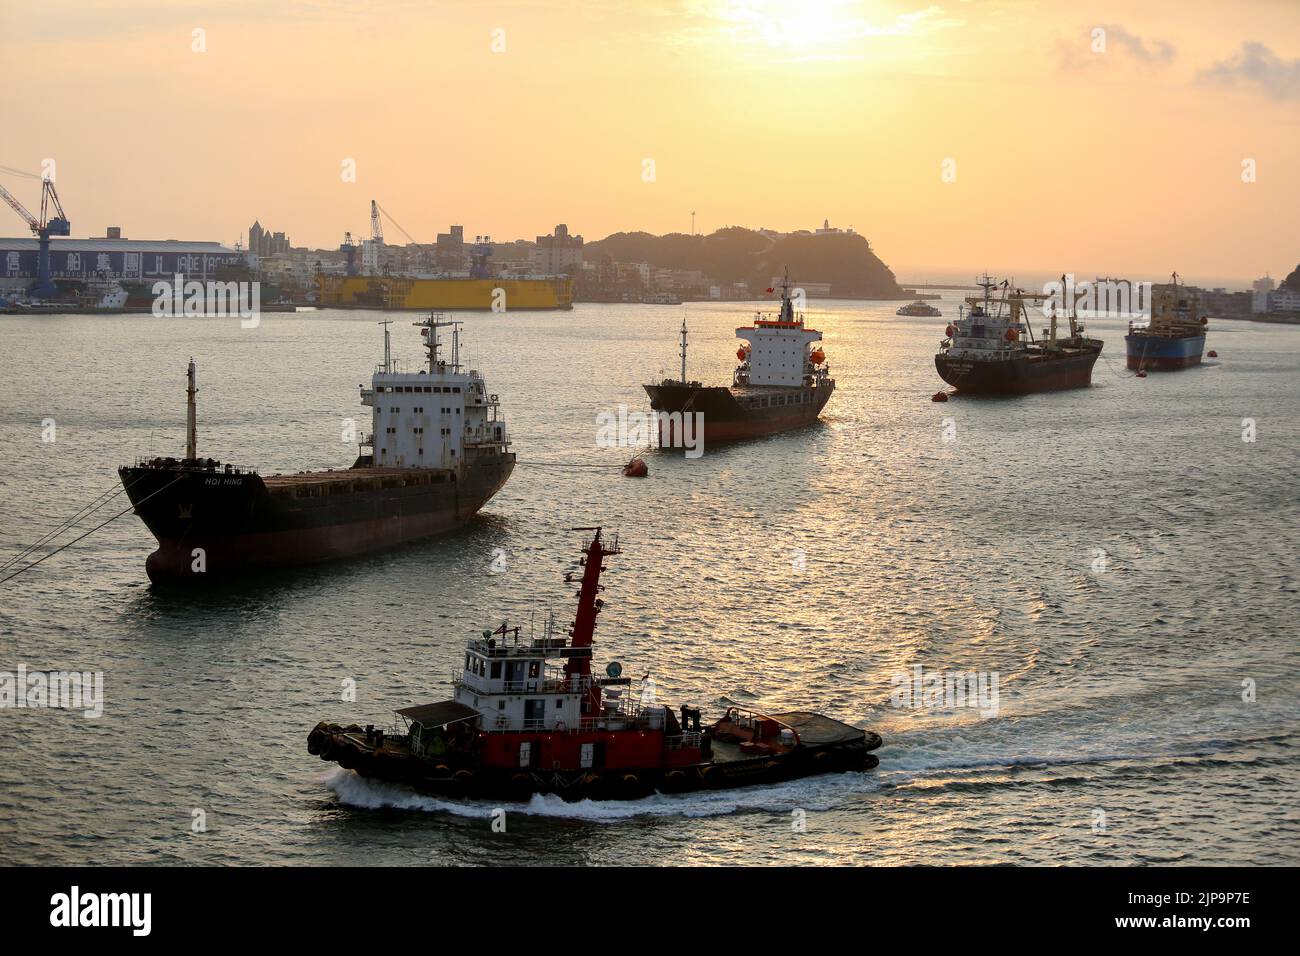 Port de Kaohsiung (高雄港), le plus grand port de Taïwan, avec des cargaisons, des navires de la marine militaire, des quais et des remorqueurs Banque D'Images